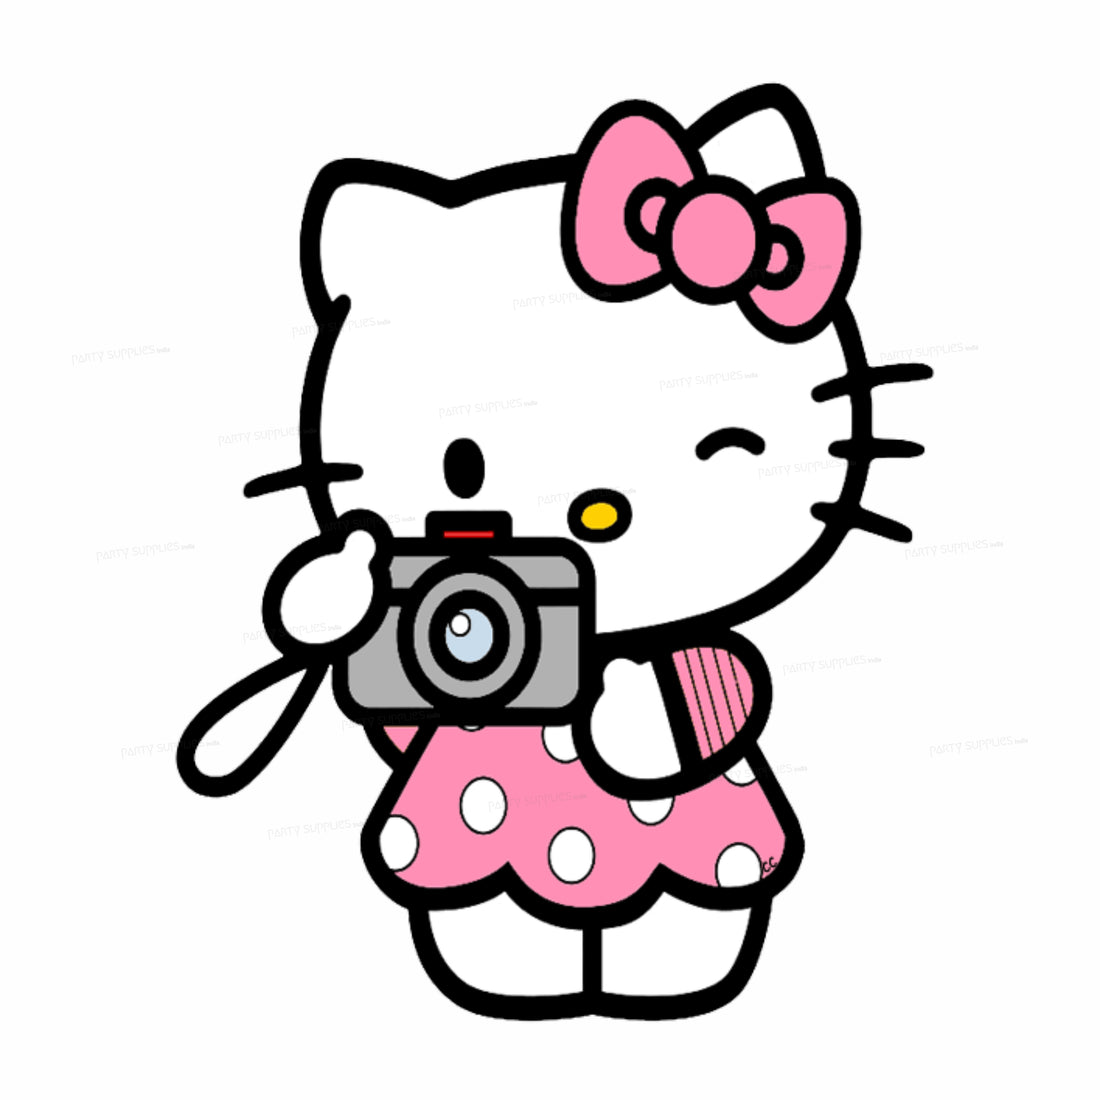 PSI Hello Kitty Theme Cutout - 01